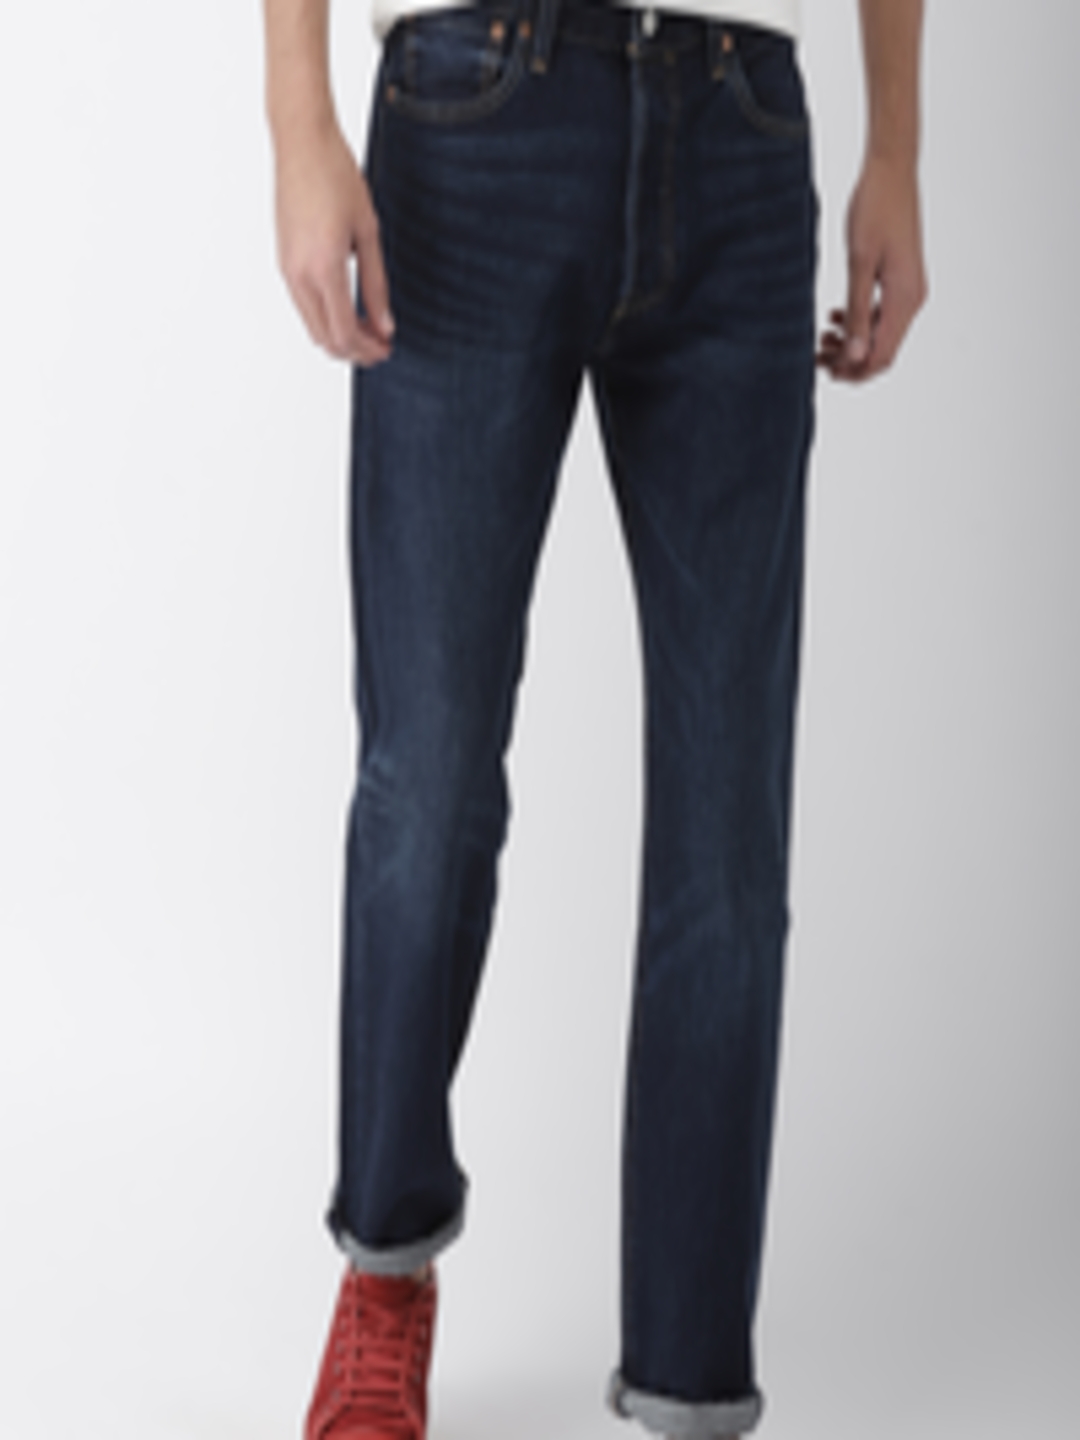 Buy Levis Men Navy Blue 501 Original Fit Mid Rise Clean Look Jeans ...